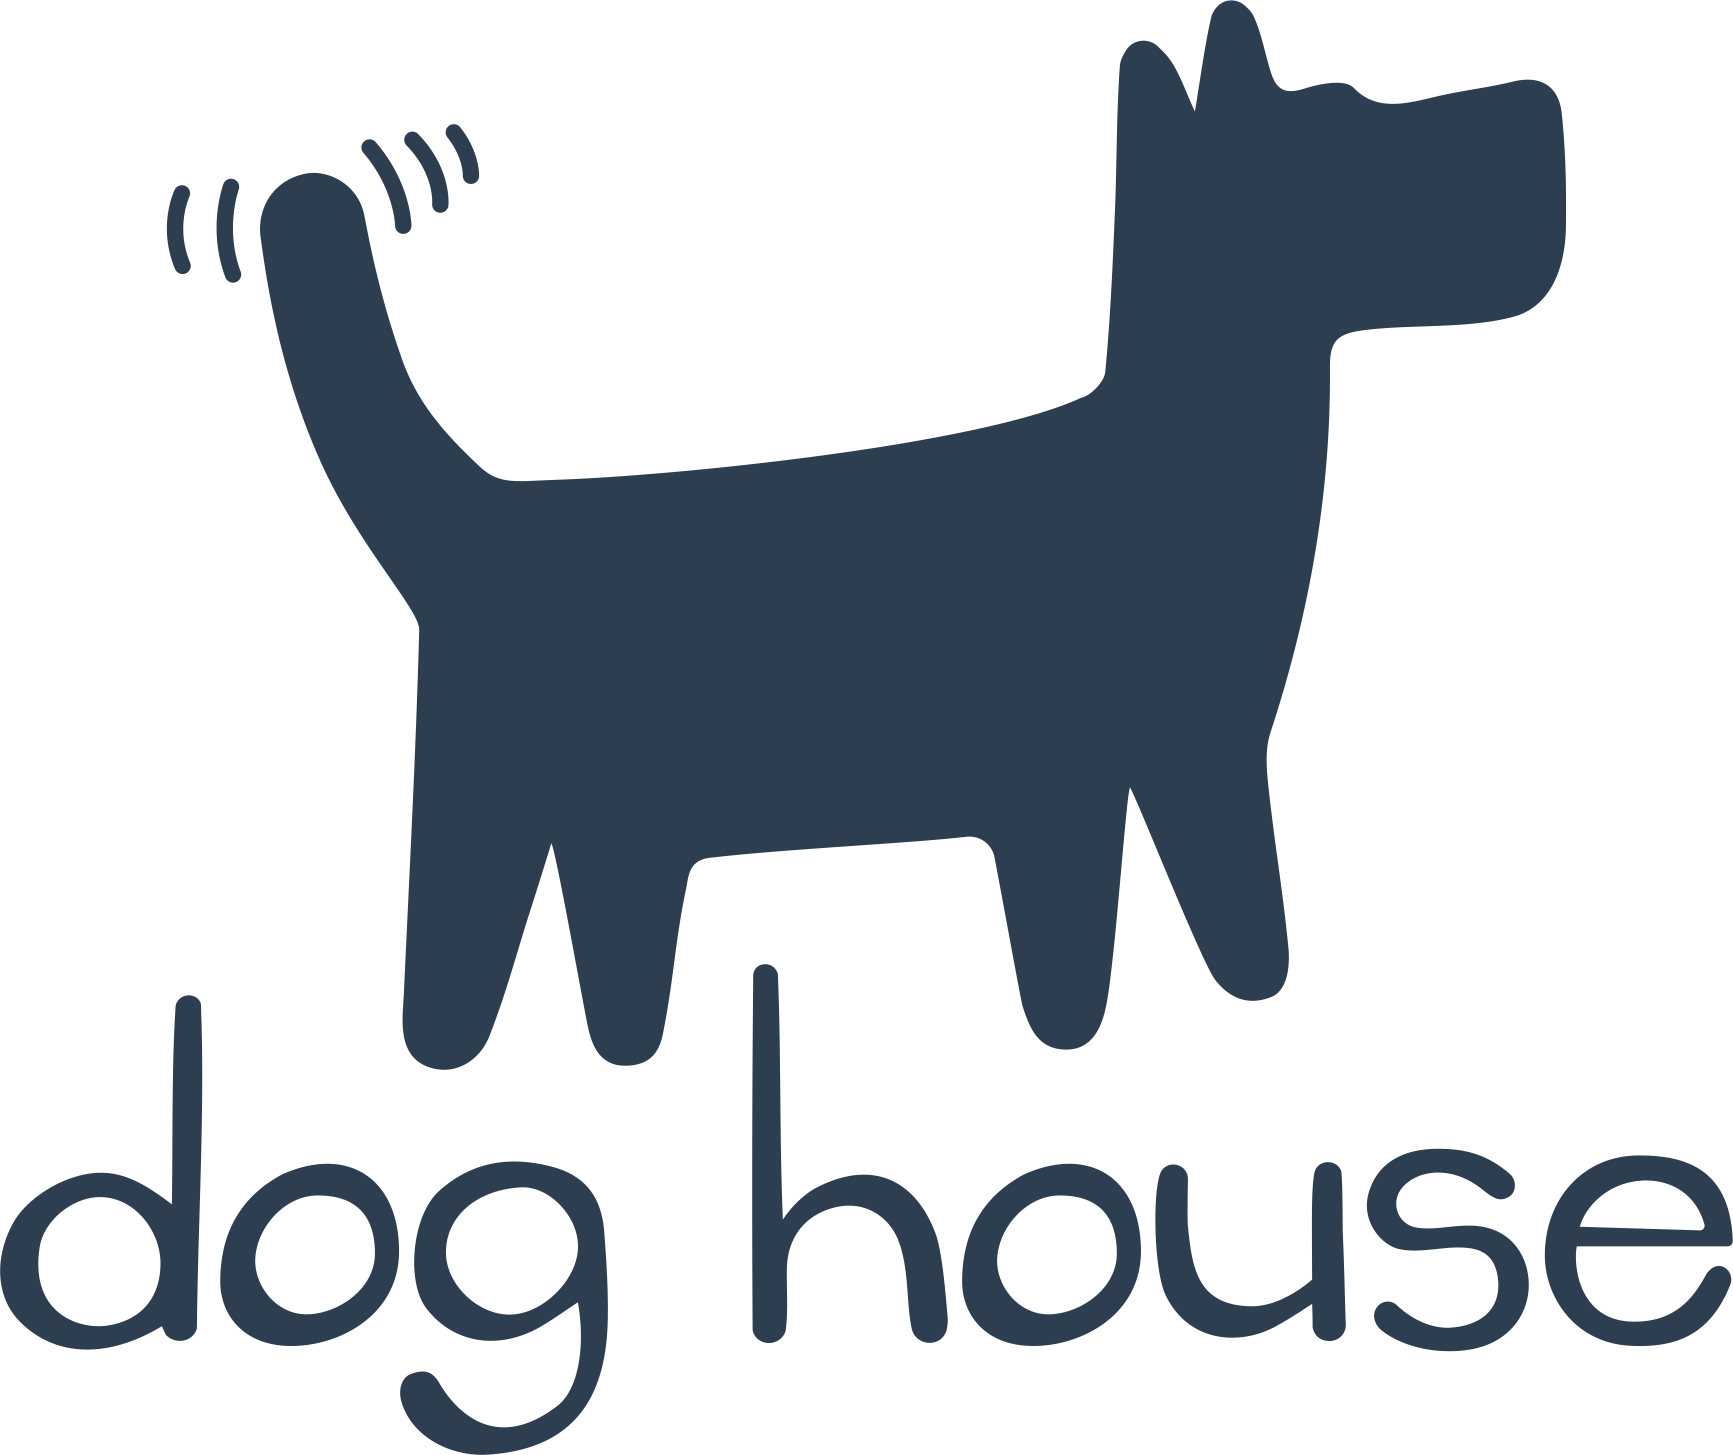 Дог хаус демо dogedraws com. Хаус собак. Логотип Dog House. Логотип для хауса собак. Авы для дог хаусов.